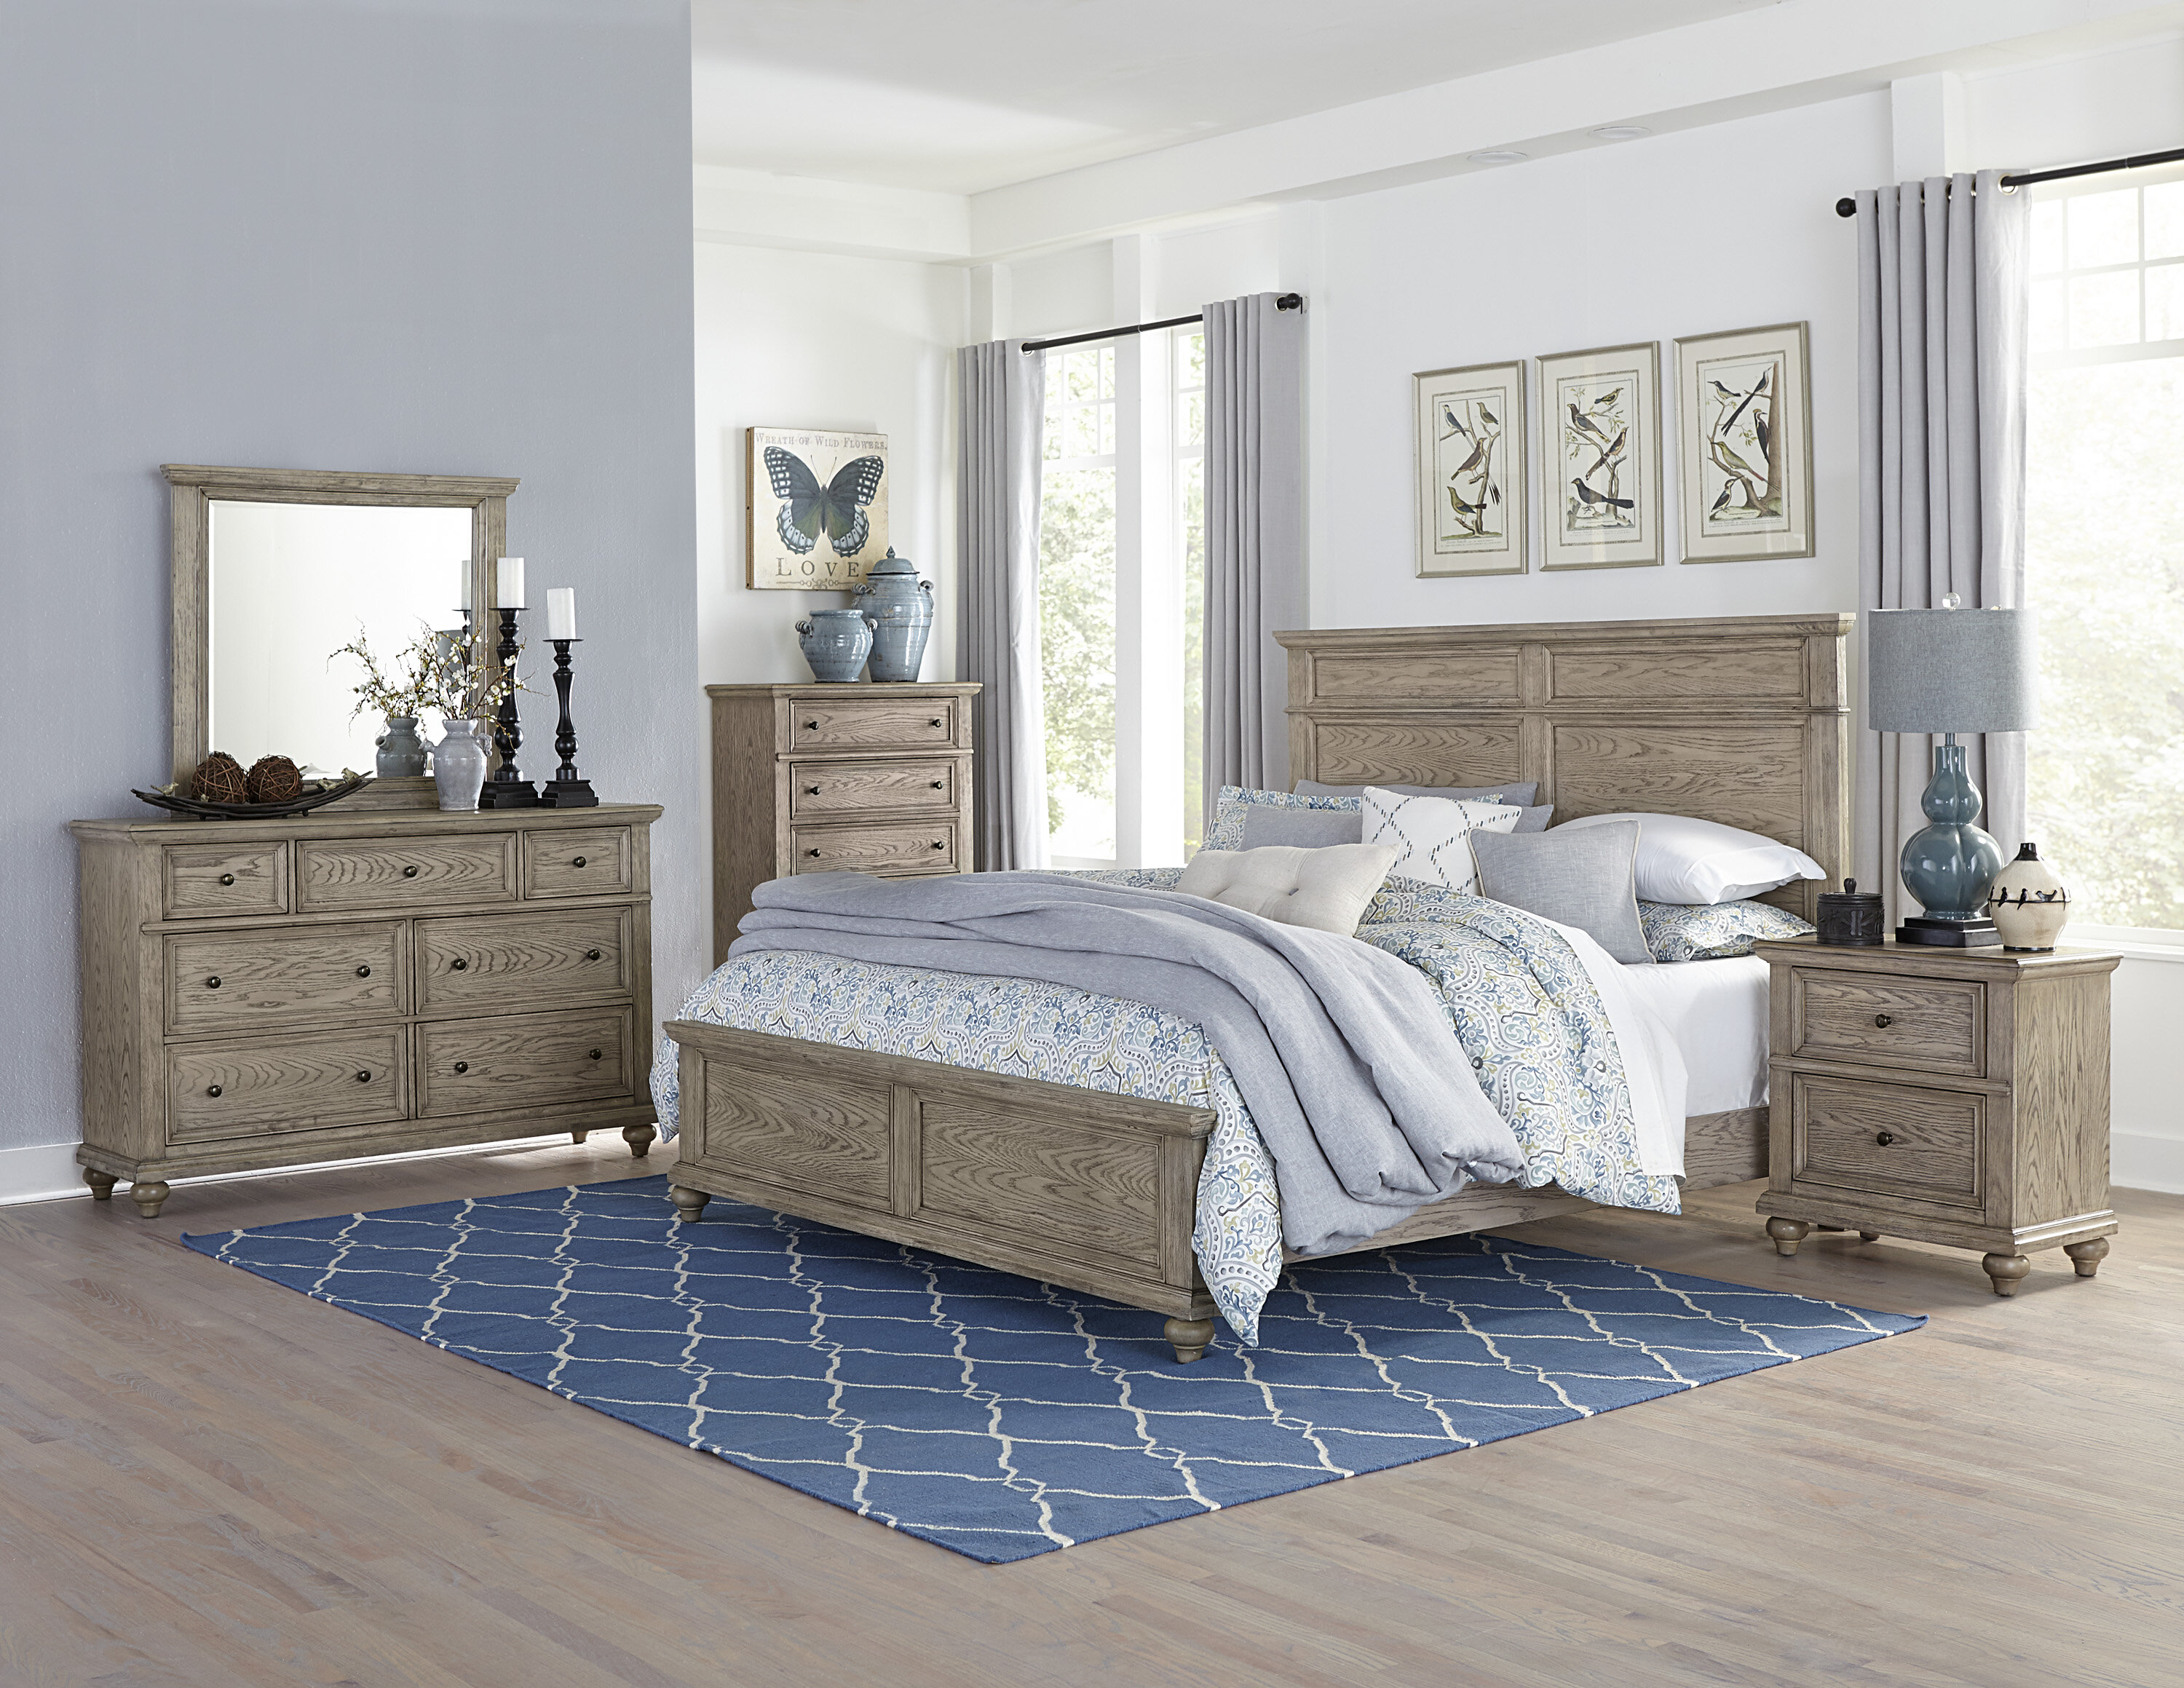 Greyleigh Lorsworth Queen Standard Solid Wood Configurable Bedroom Set Reviews